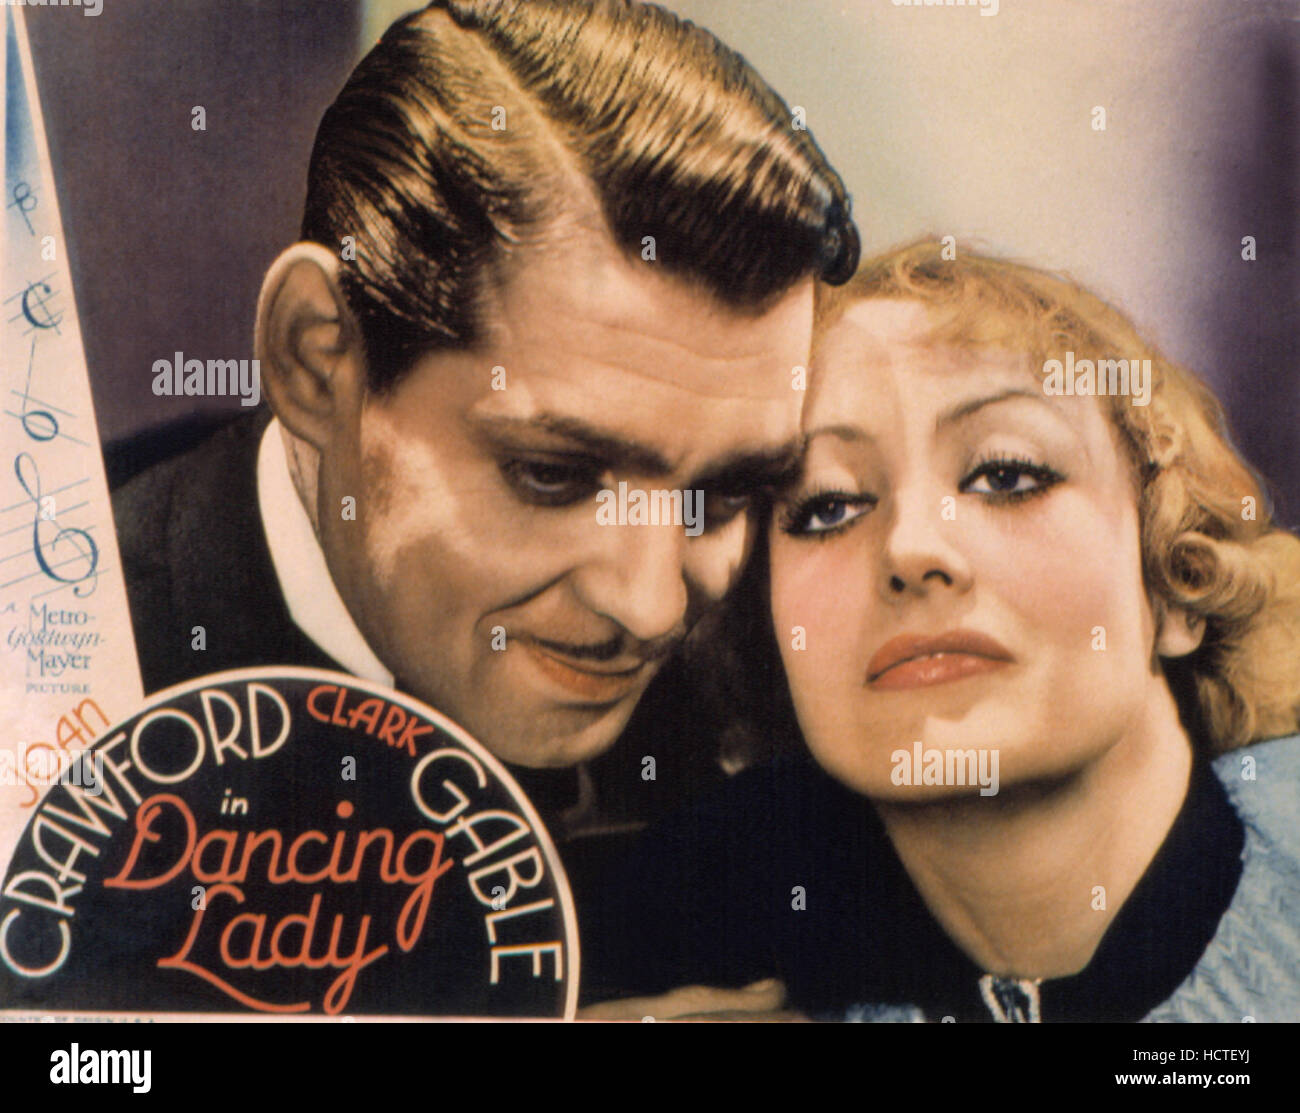 DANCING LADY, Clark Gable, Joan Crawford, 1931, poster art Stock Photo ...